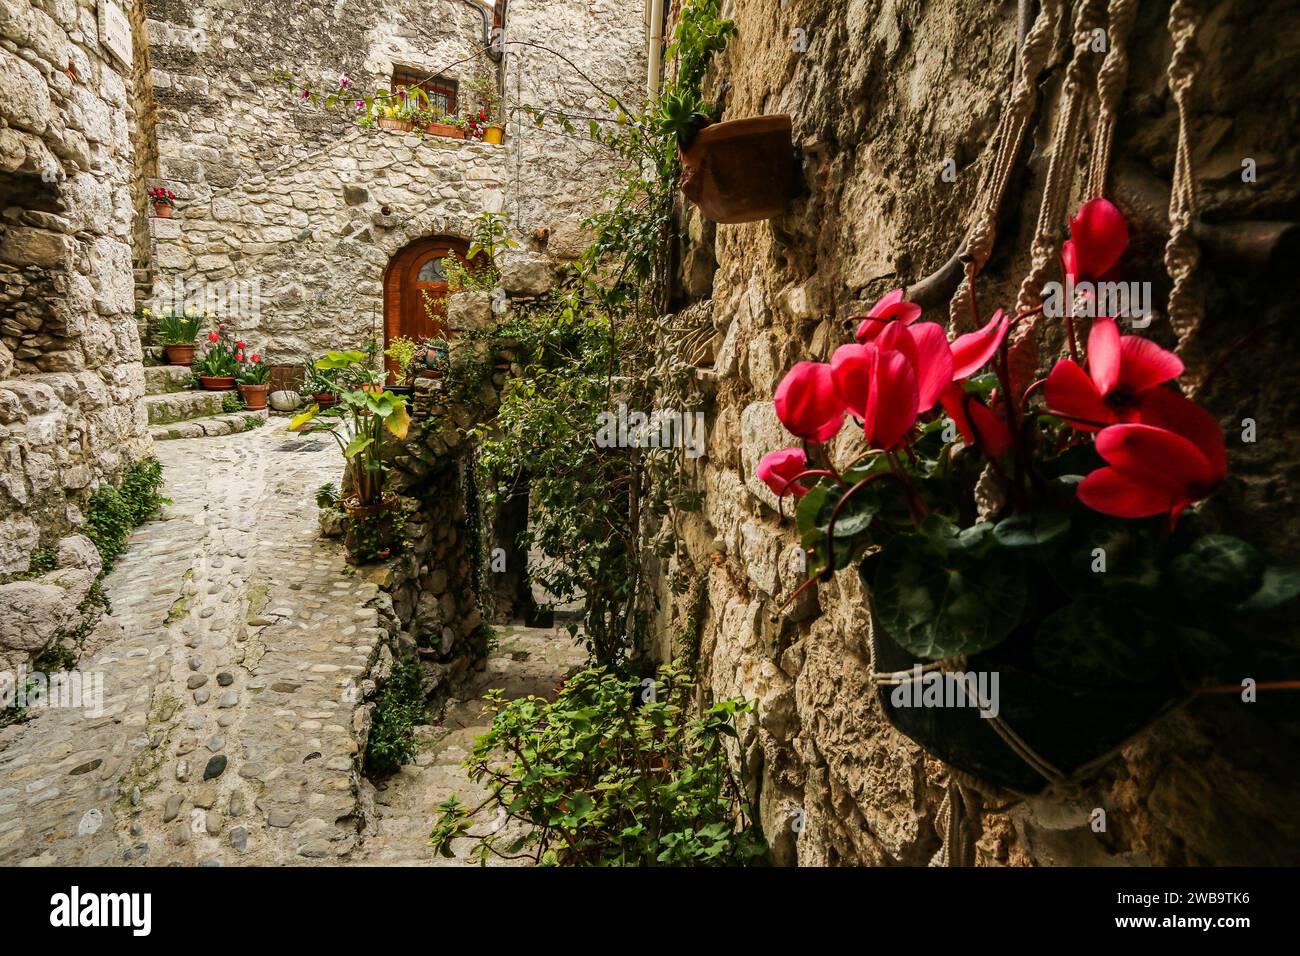 Fiori di ciclamino sulle mura di un'antica casa in pietra a Peillon, un villaggio arroccato medievale nel dipartimento delle Alpi marittime, nel sud-est della Francia Foto Stock